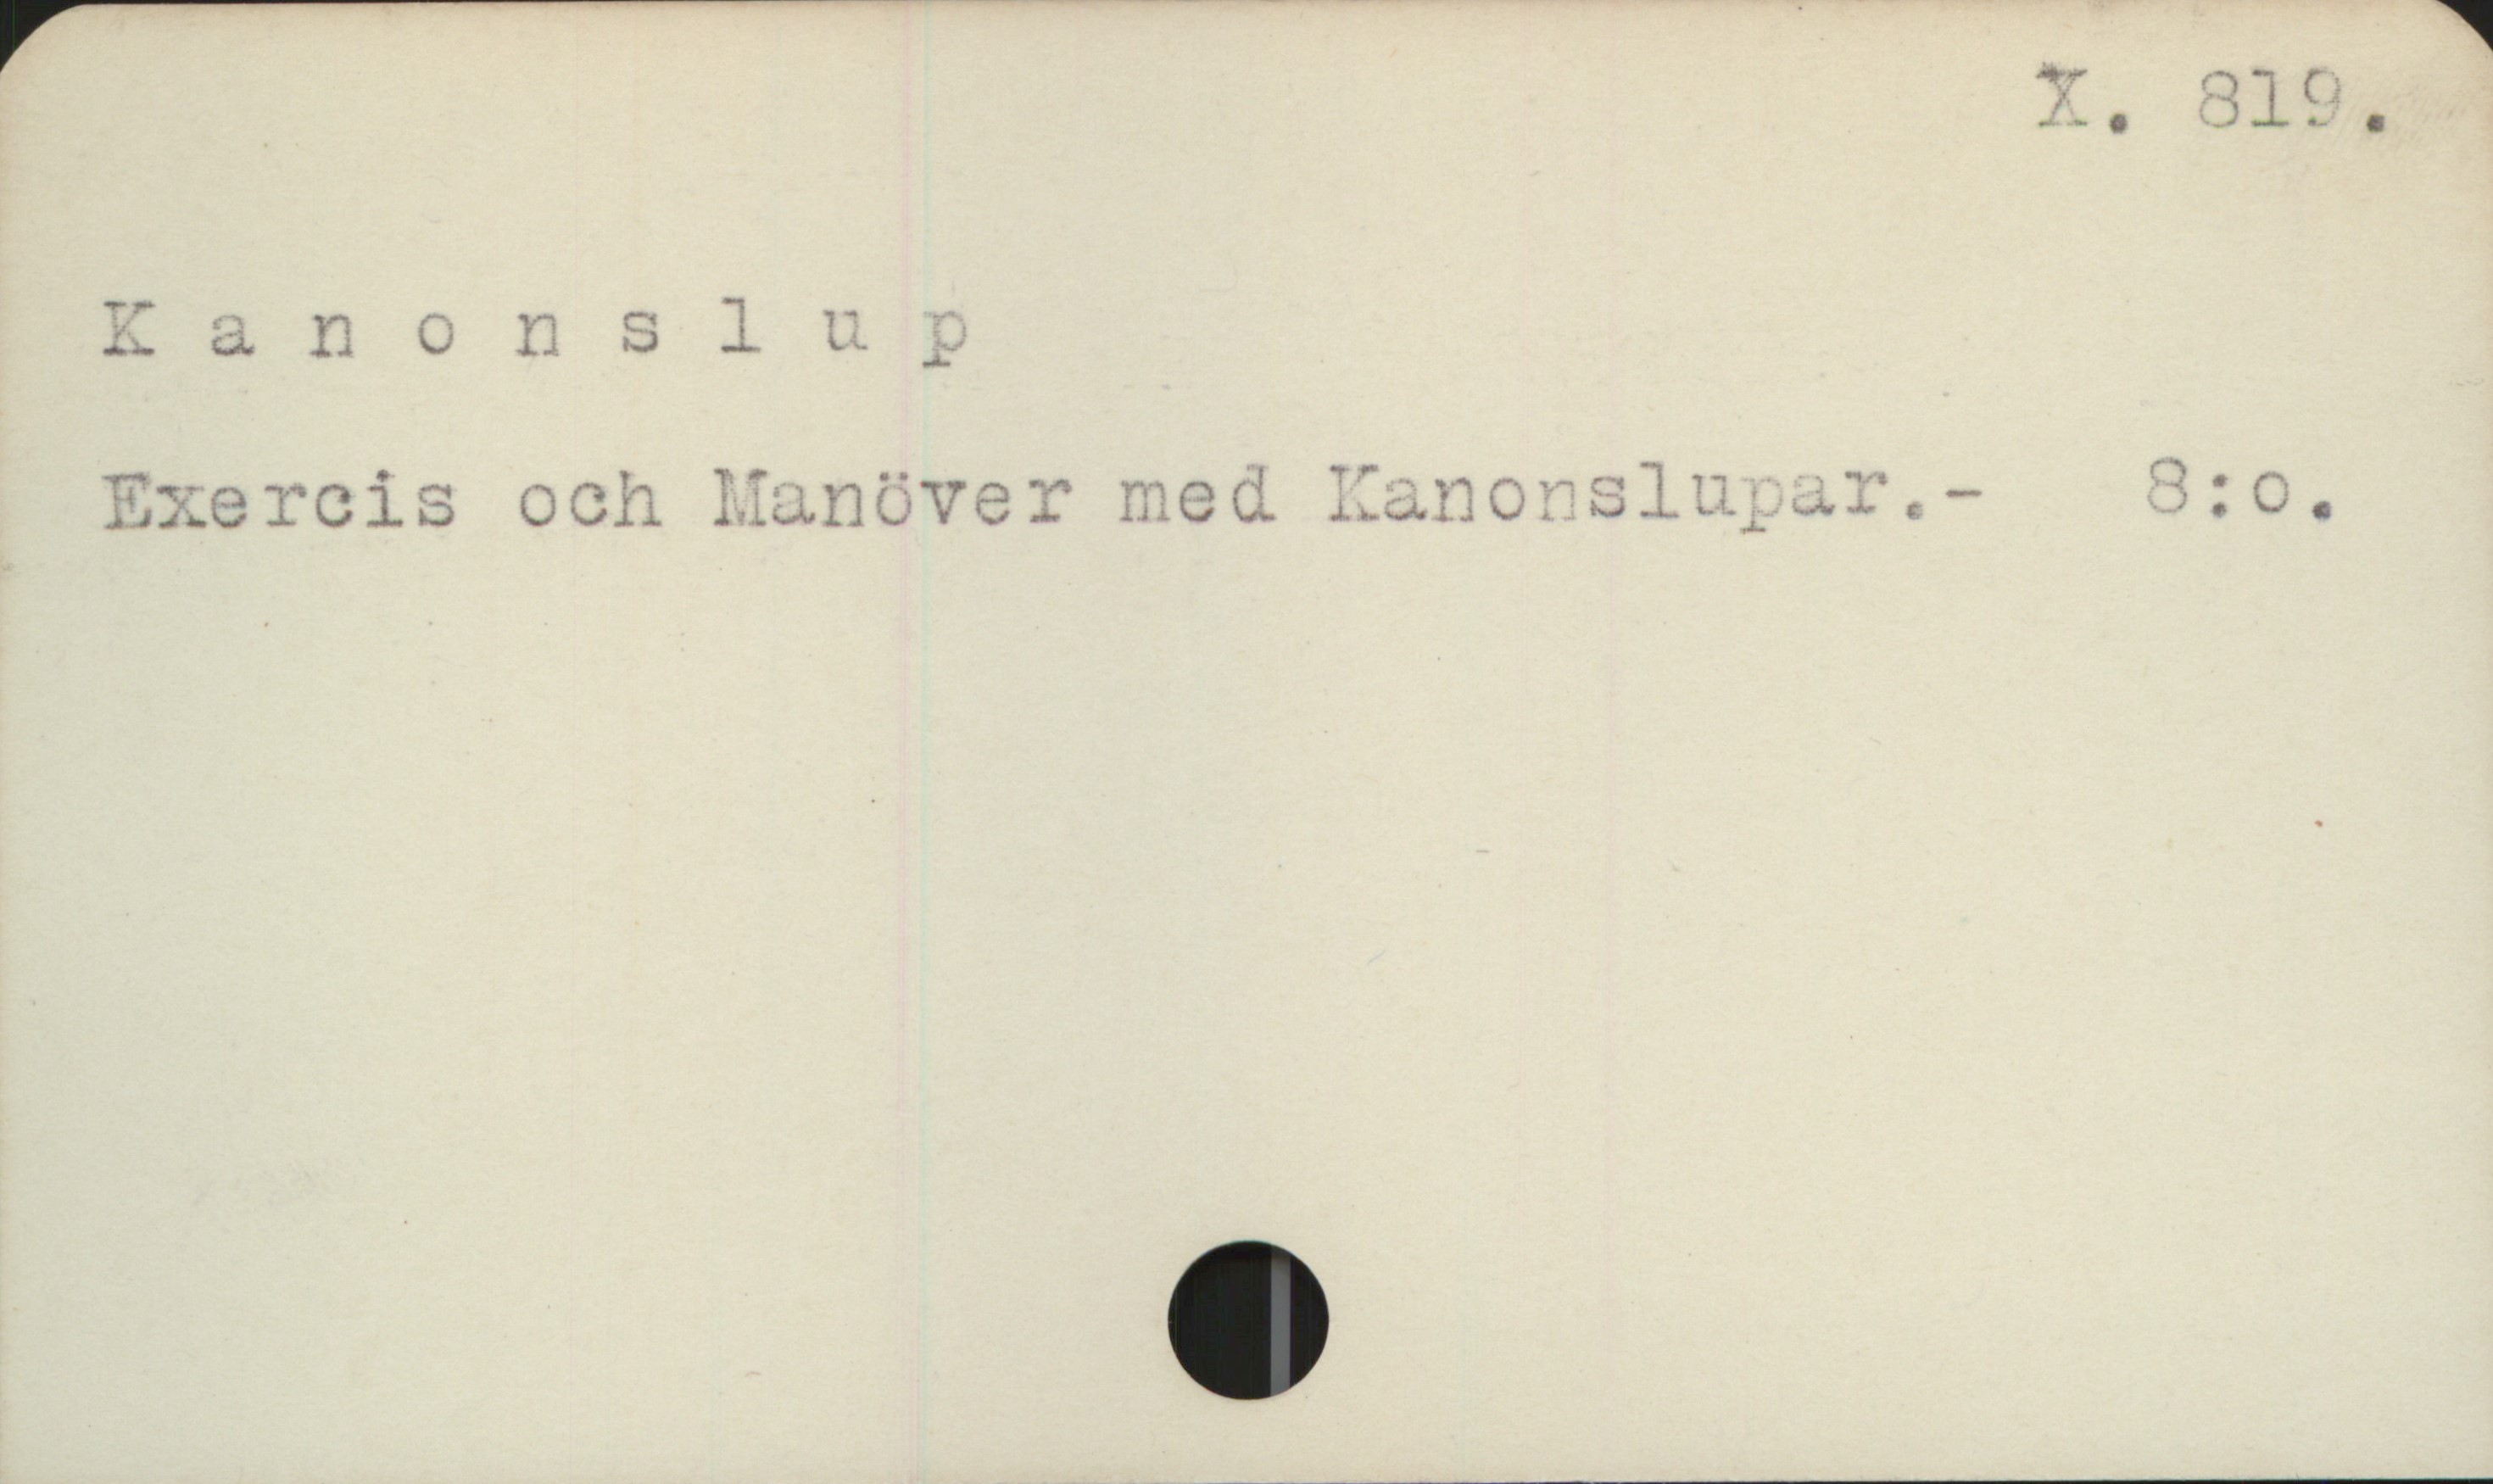  . X. 319,
X. anonslw 2
Lxercis och ManöveT med lanorslu; v.- 23:0.

